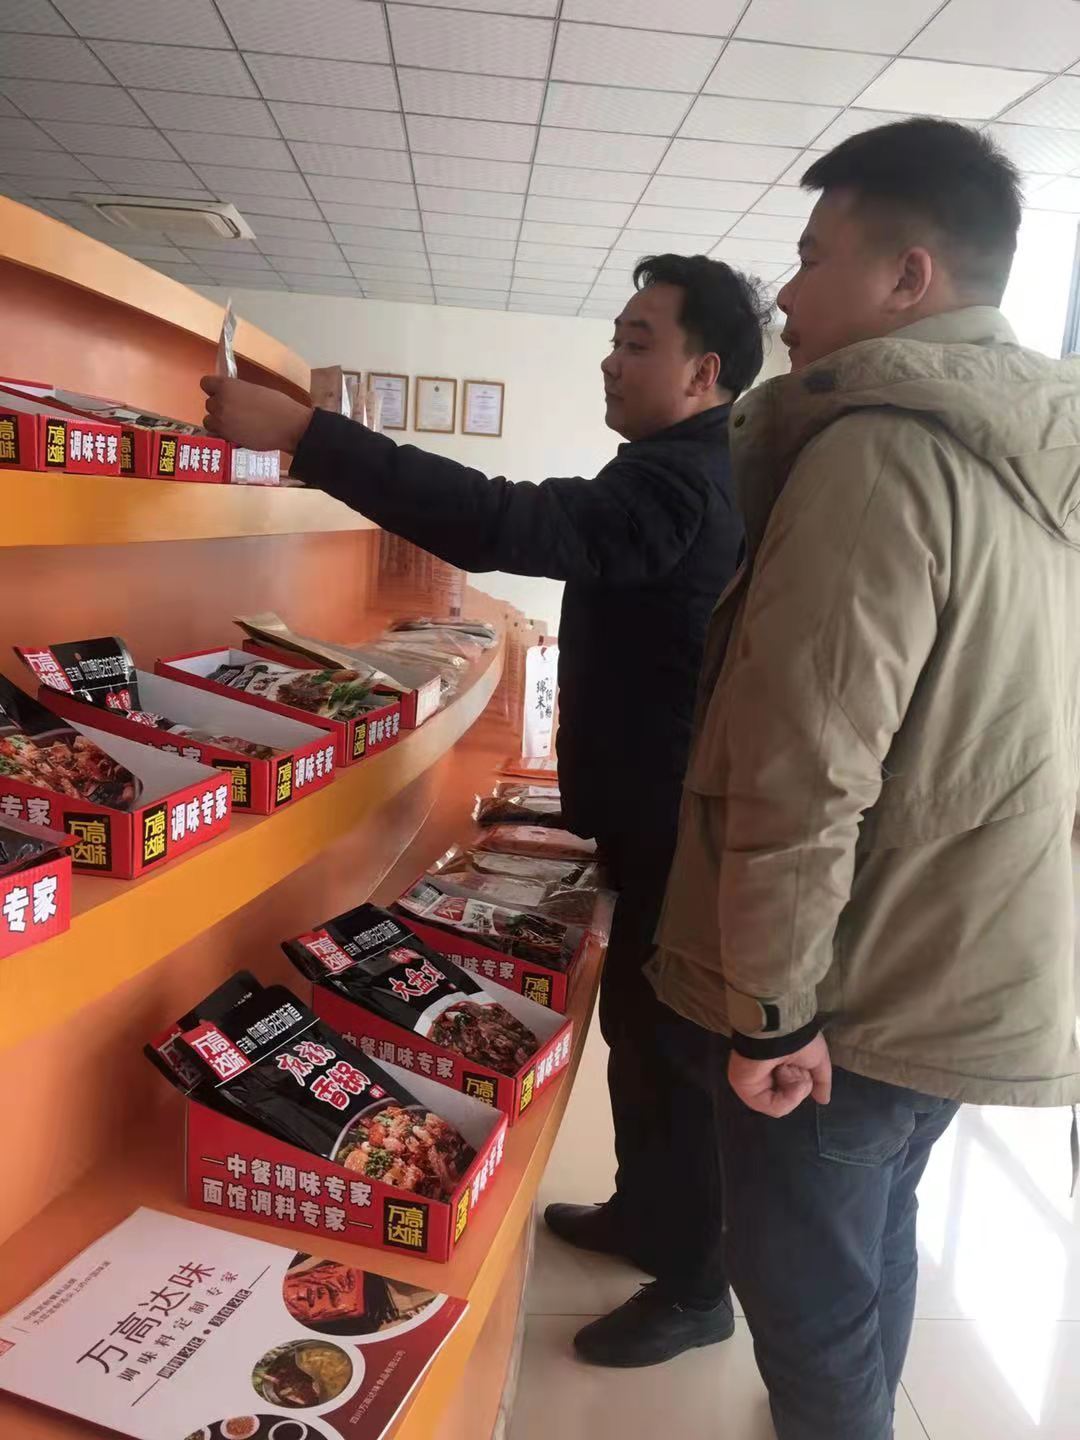 湖南社区团购电商企业负责人来公司考察并采购米粉等产品